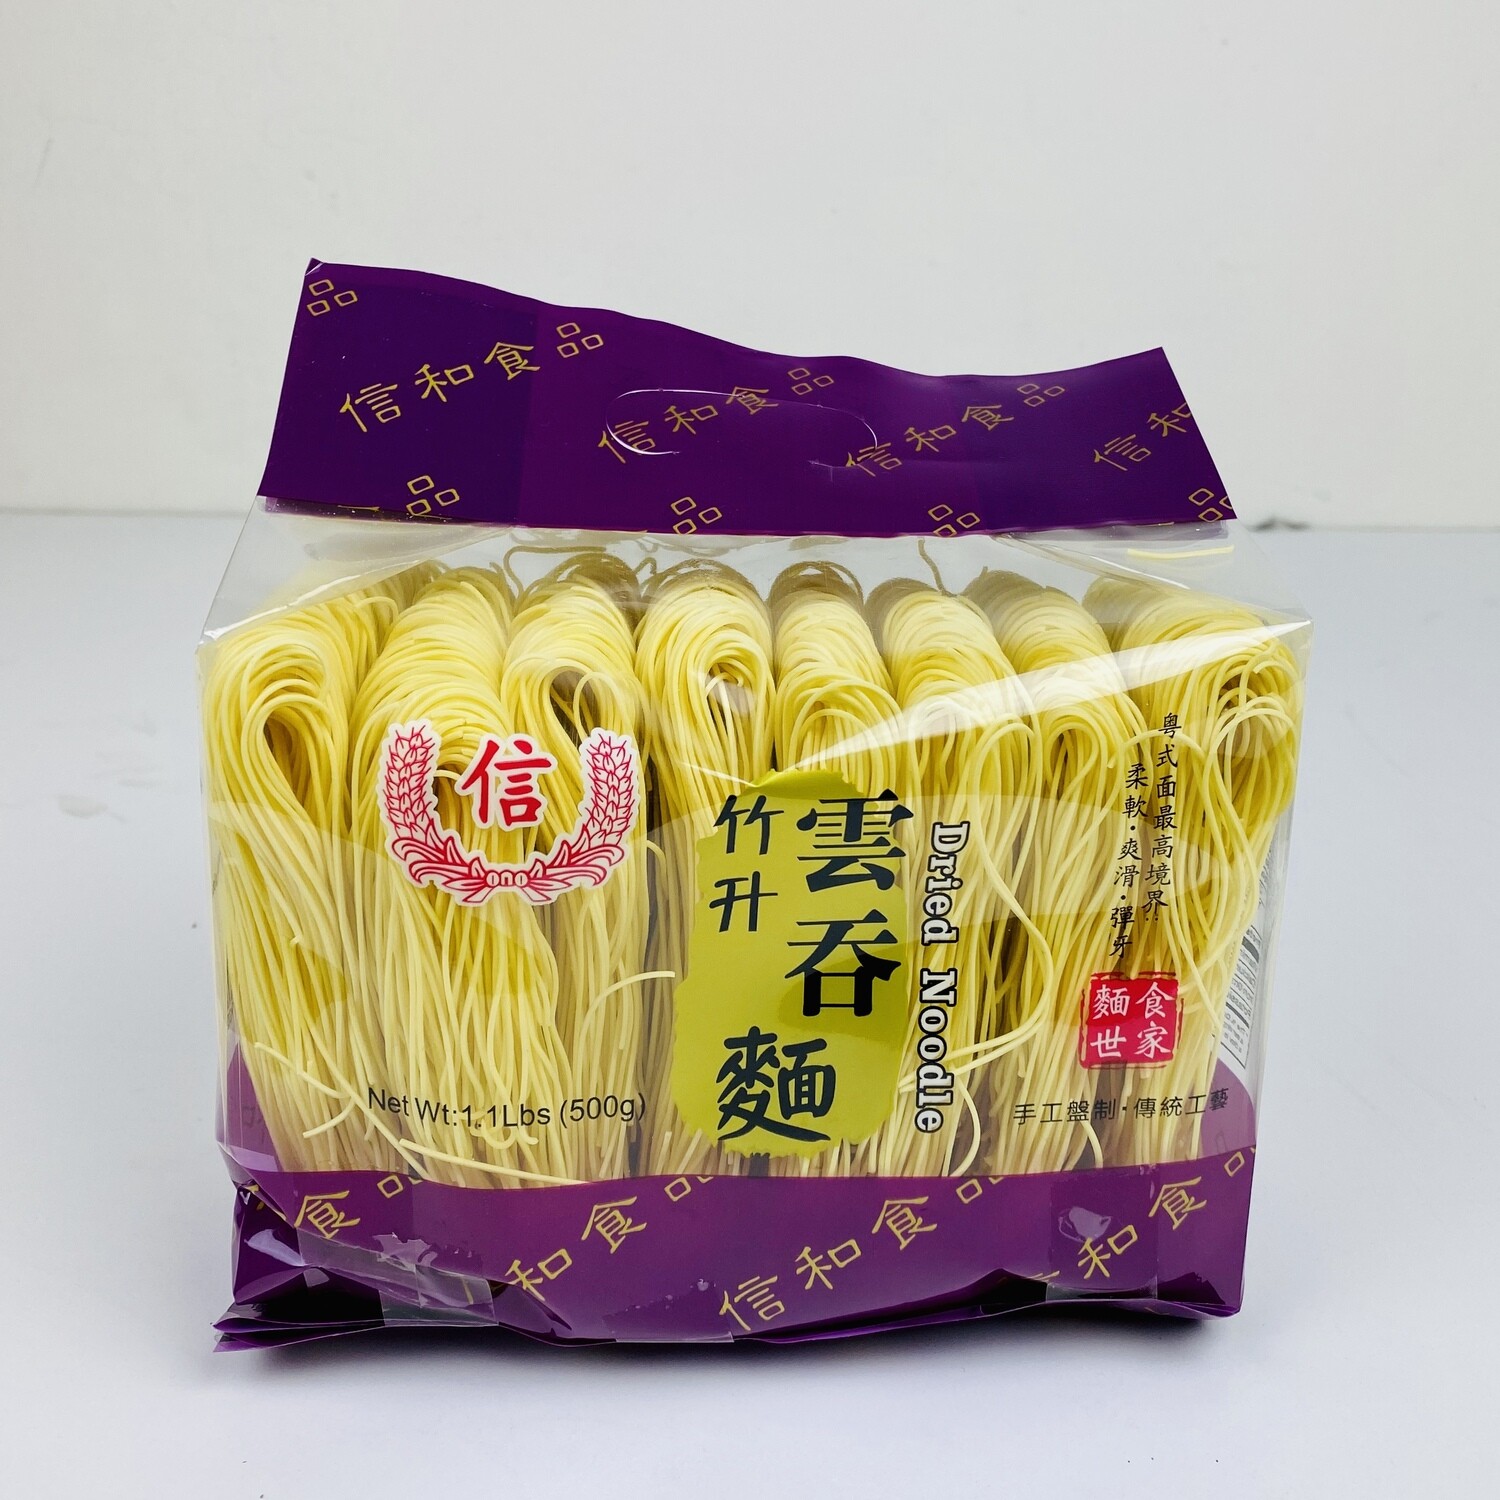 Dried Wonton Noodle 500g 信-竹升云吞面